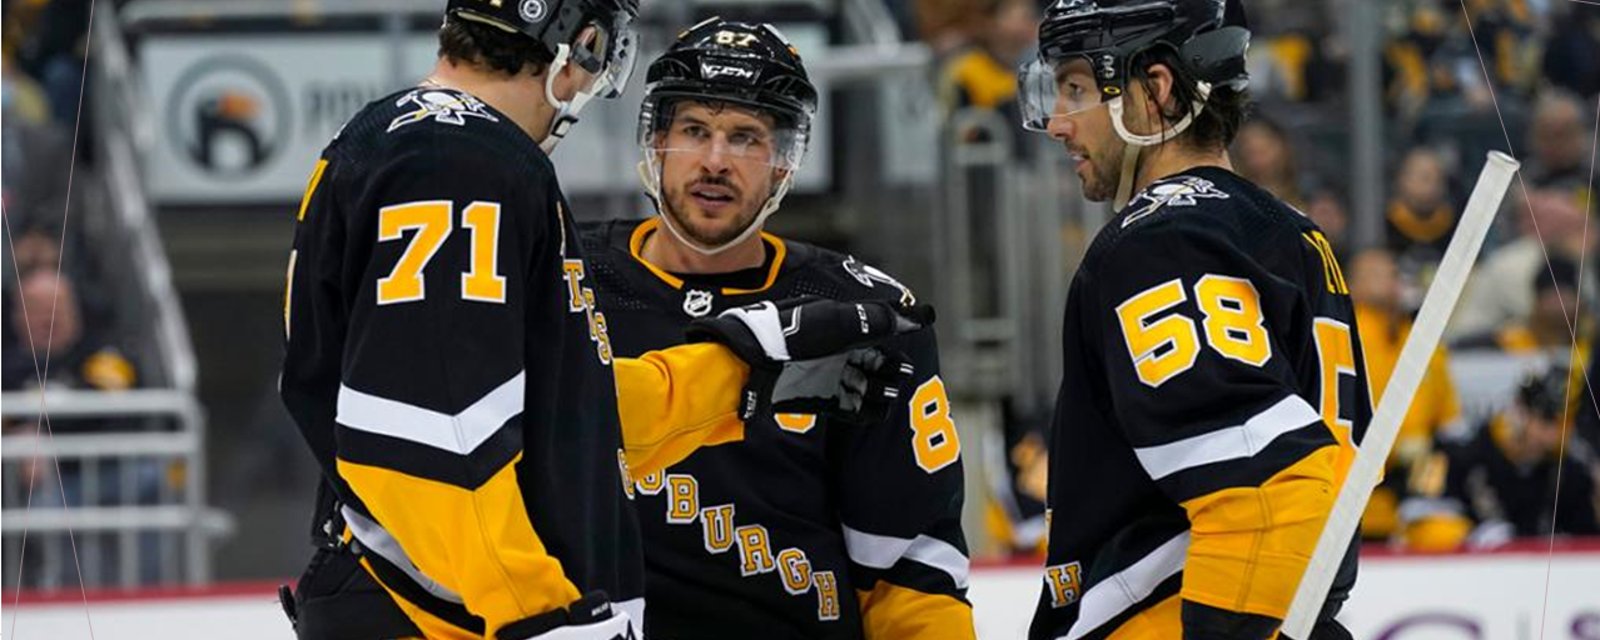 Les Penguins pourraient se mettre dans le trouble en faisant l'acquisition d'Erik Karlsson